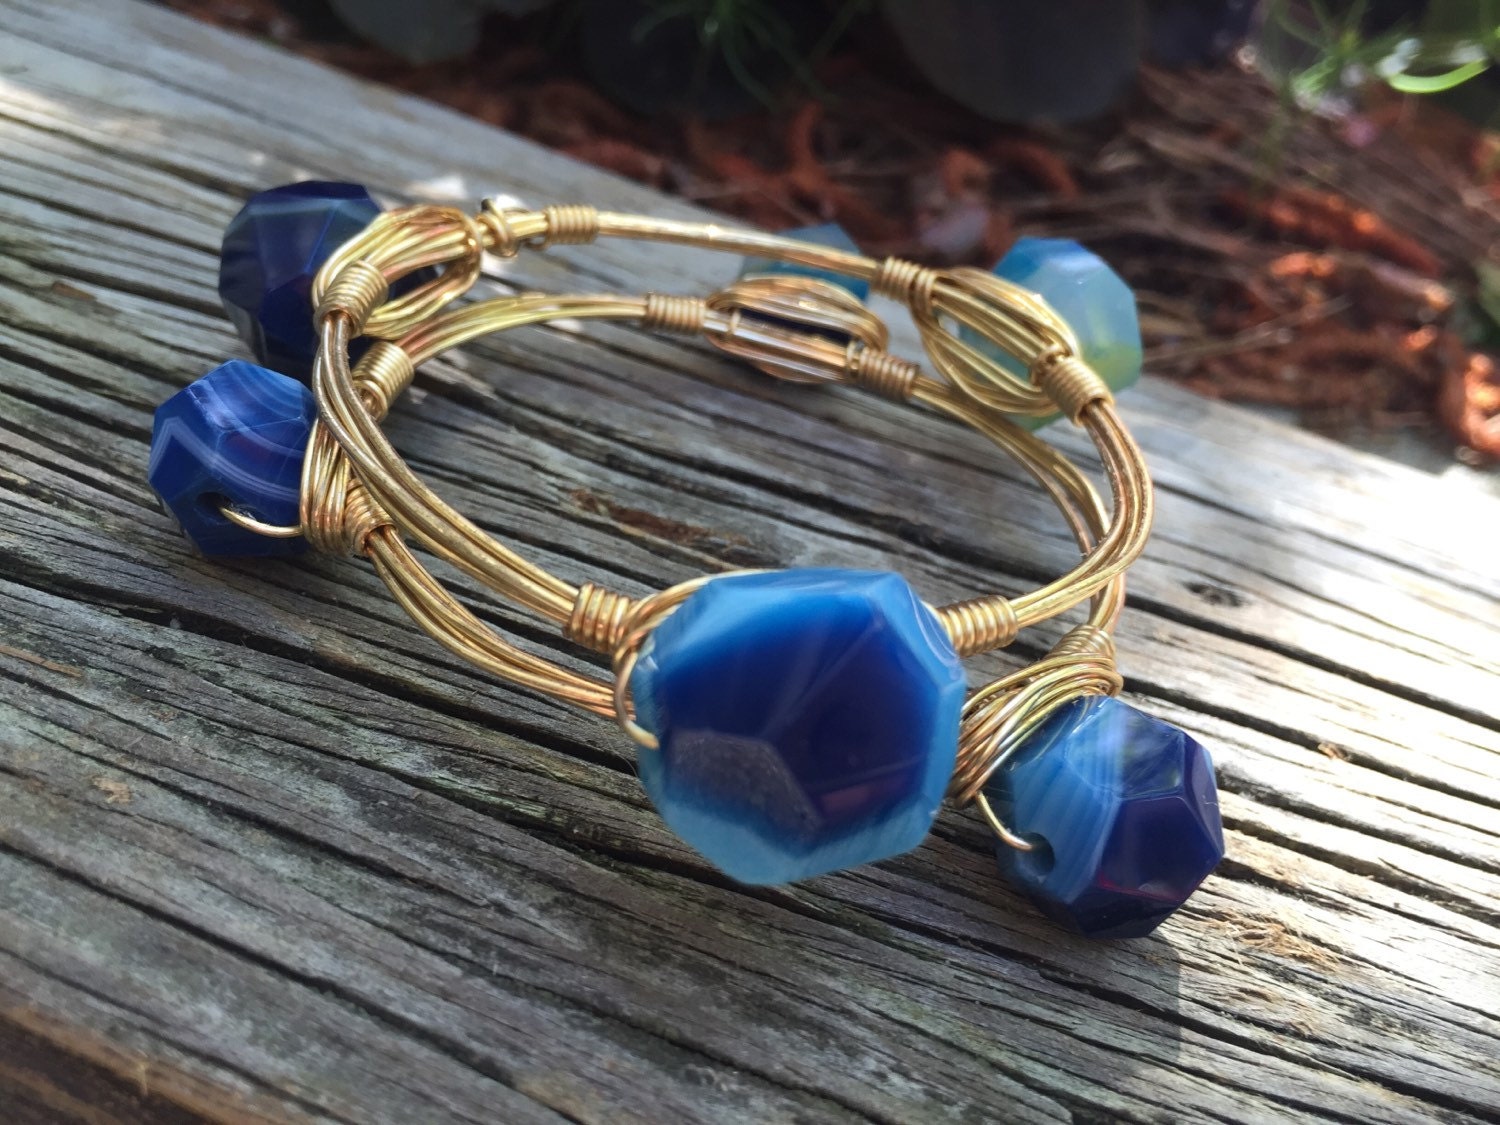 Blue agate stone bangle bracelet by iheartlulabees on Etsy